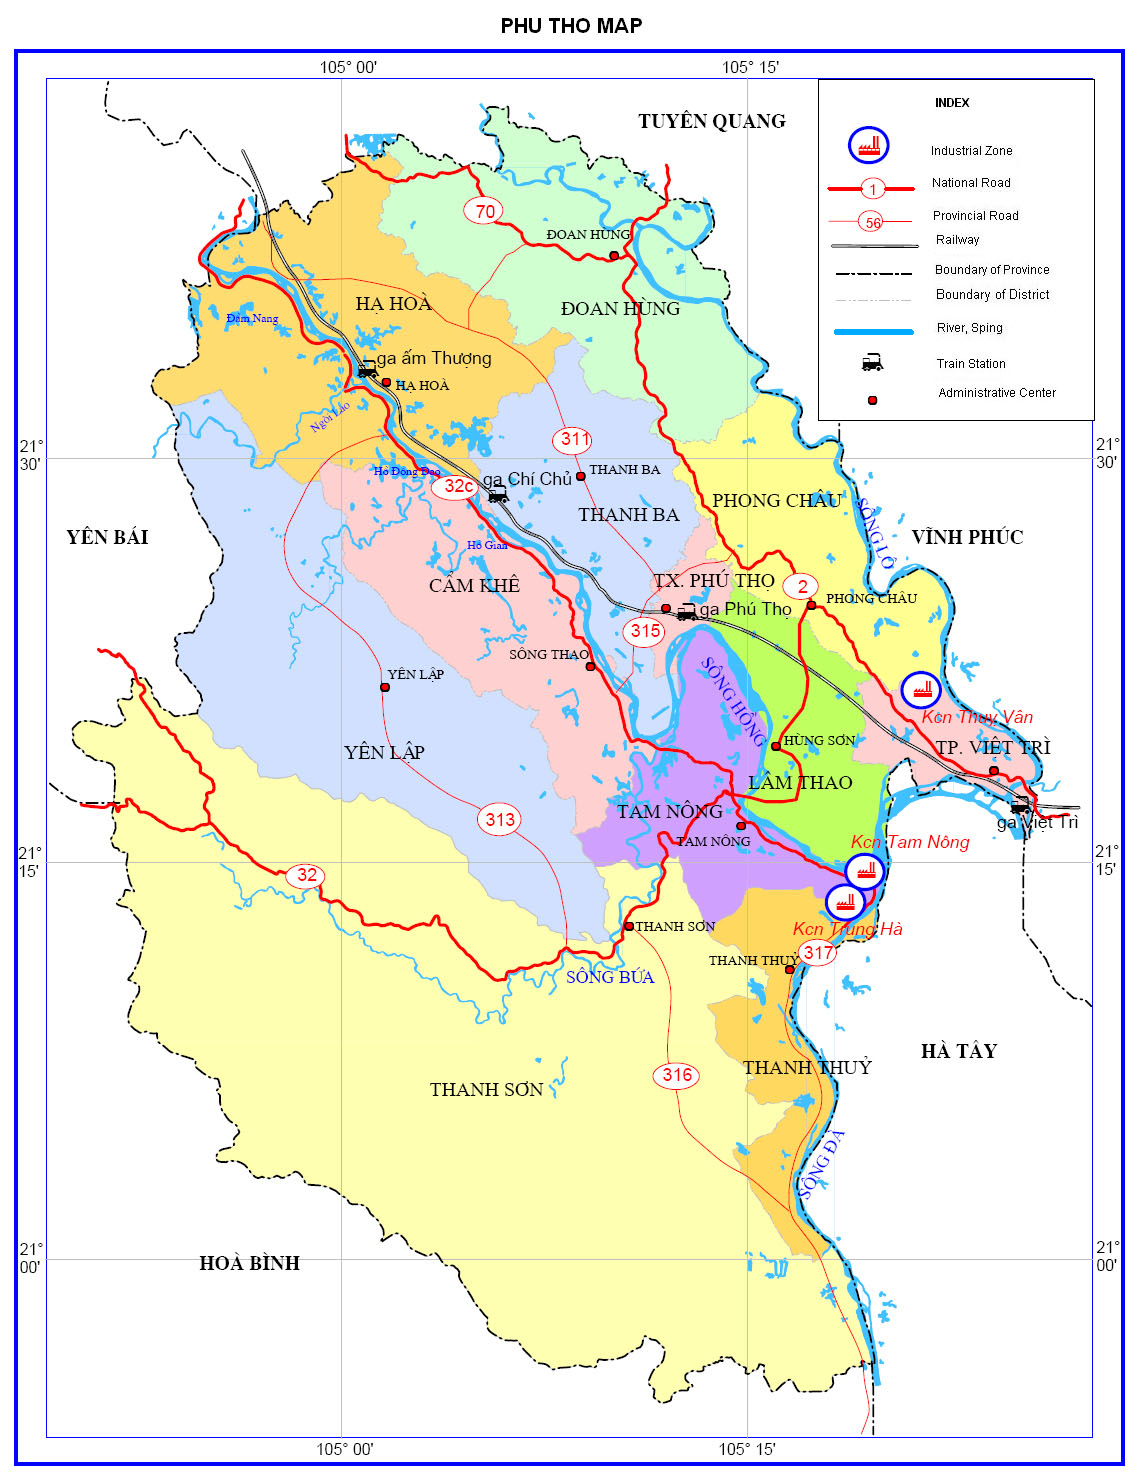 Bản đồ hành chính tỉnh Phú Thọ năm 2024 đã được cập nhật với những thông tin mới nhất về địa điểm, công trình và cơ quan chính quyền tại tỉnh. Hãy sử dụng bản đồ này để khám phá những điểm đến mới lạ và tuyệt vời tại Phú Thọ.